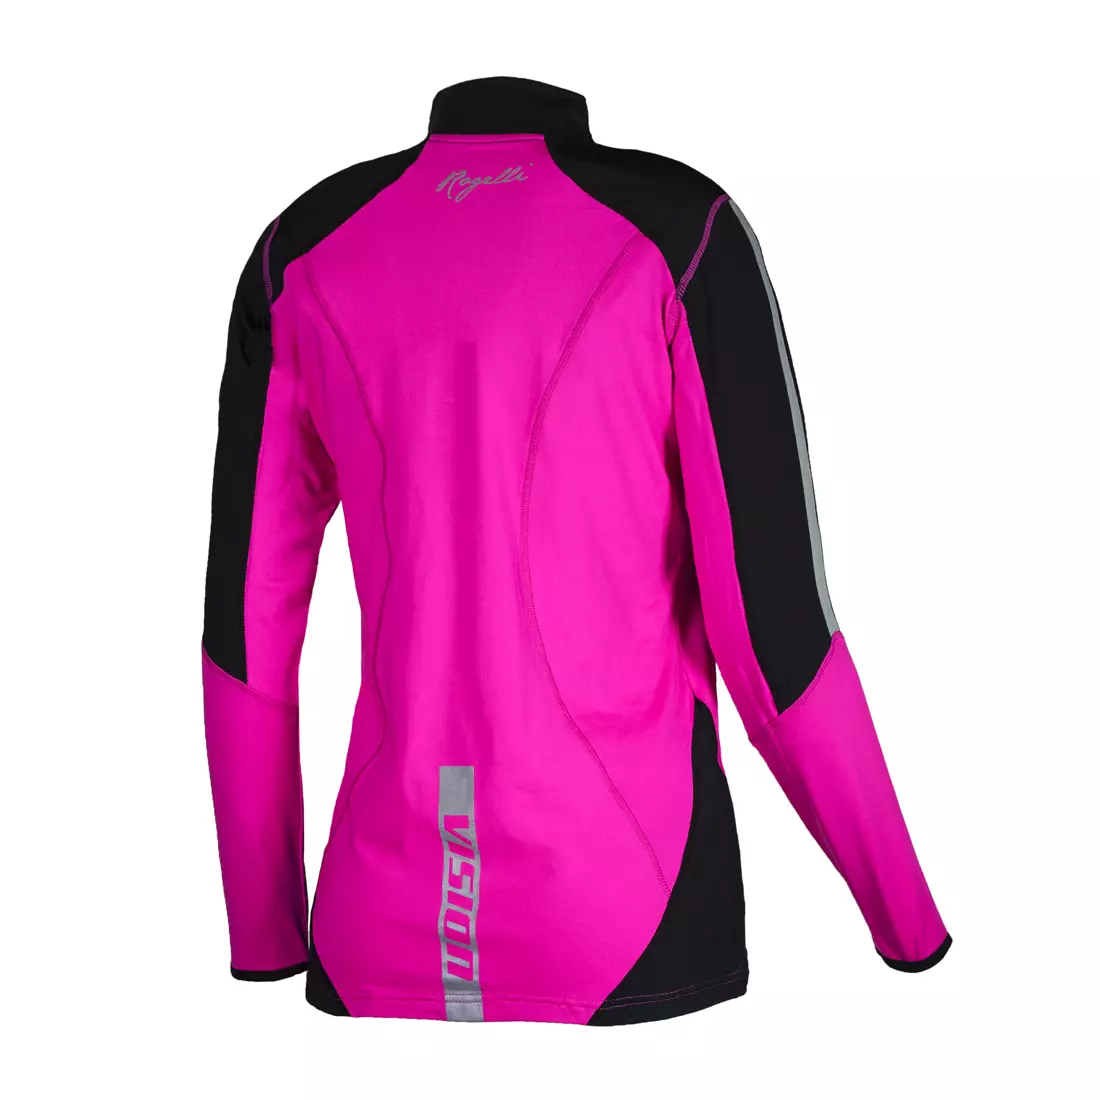 ROGELLI RUN COBY 840.653 - women's running sweatshirt, color: pink